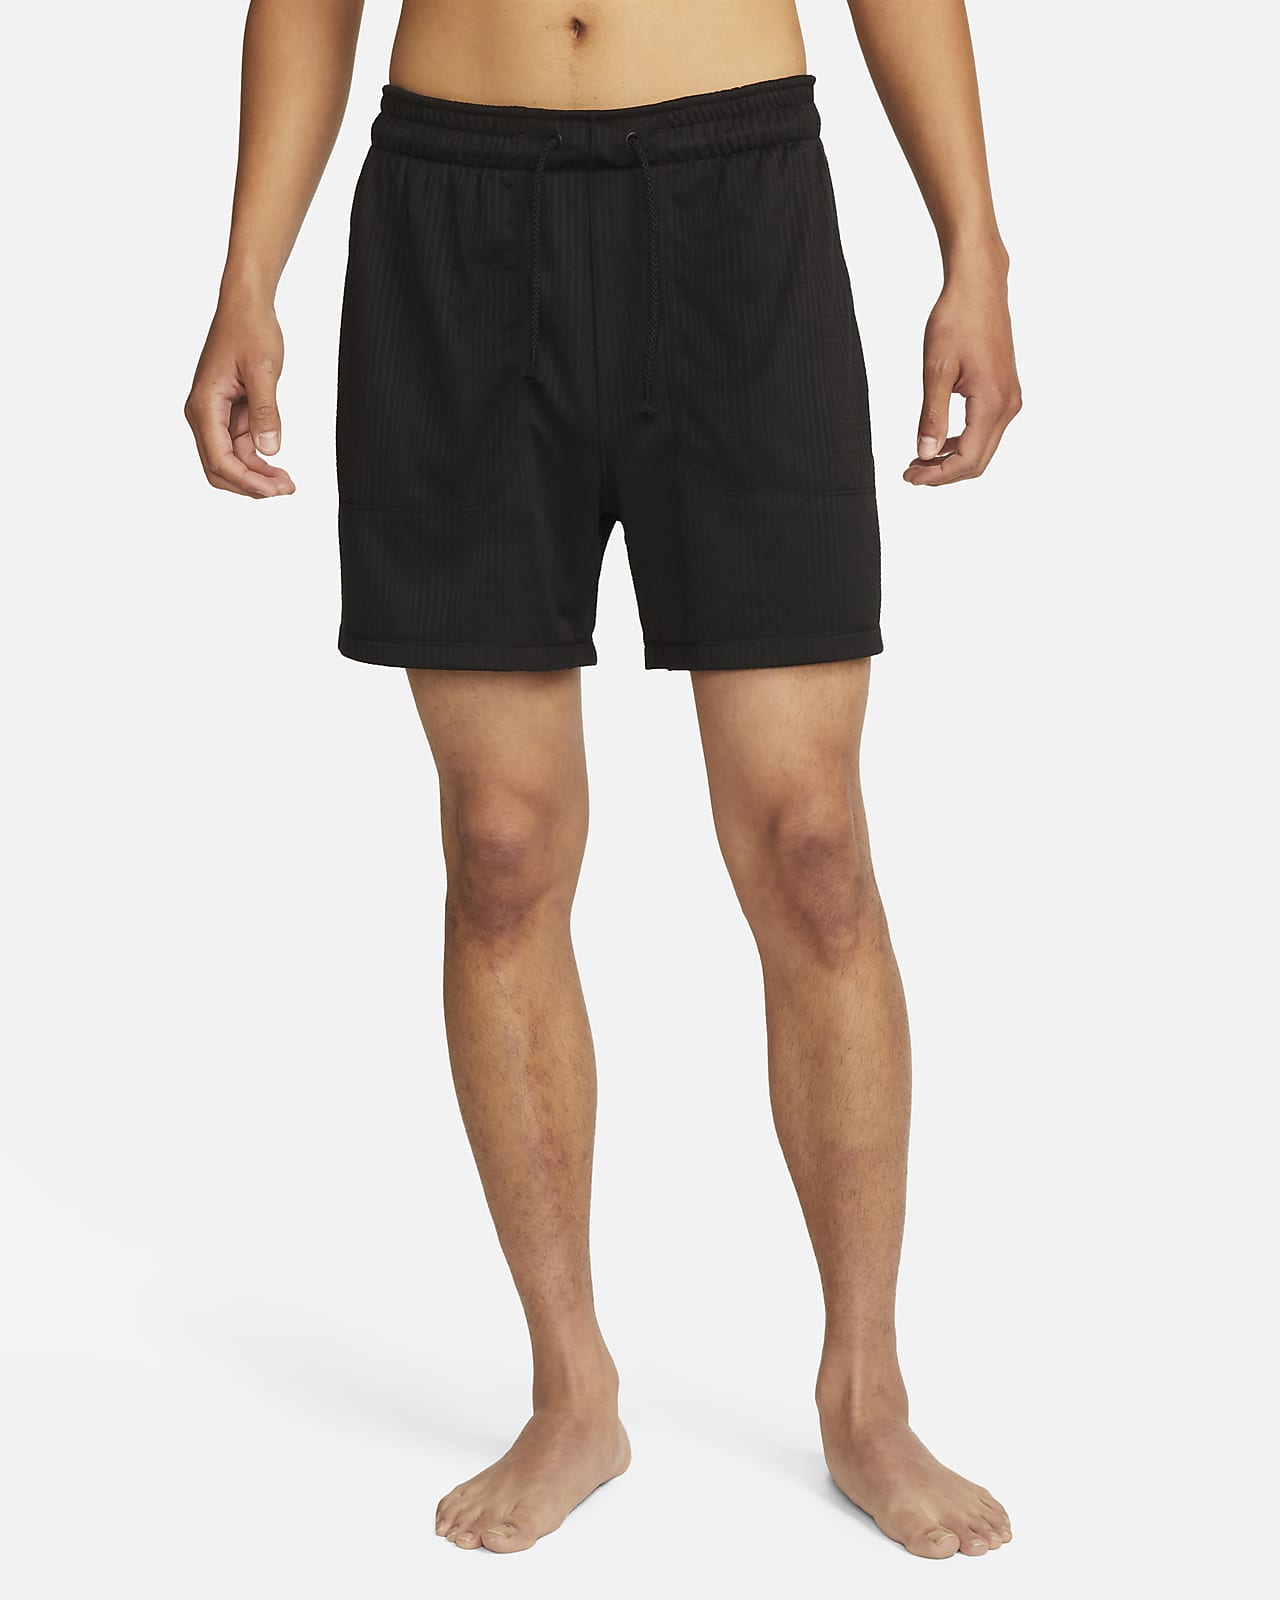 Nike Yoga Men's Dri-FIT 5" Unlined Shorts